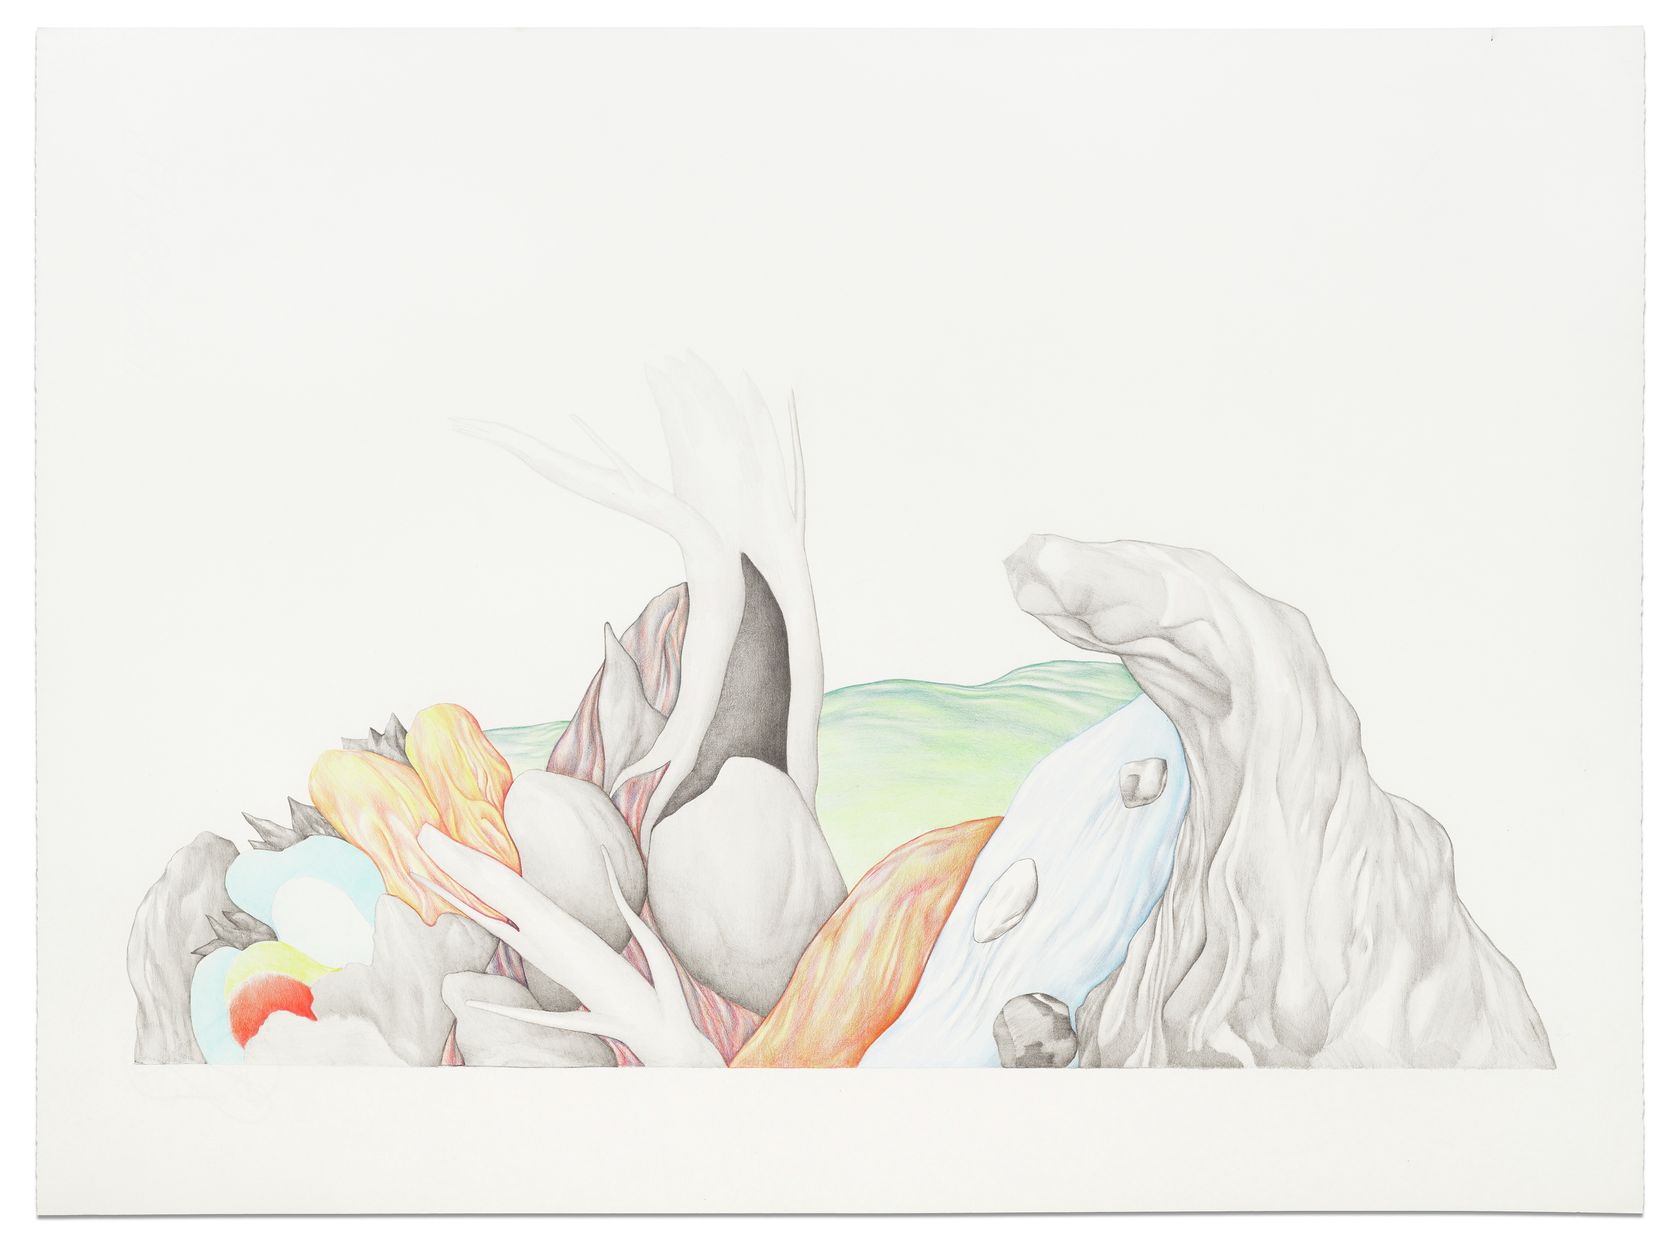 Guillaume Dégé, Sans titre, 2011 Crayon de couleur sur papier48 × 65 cm / 18 7/8 × 25 5/8 in. | 68 × 83 × 2.5 cm / 26 6/8 × 32 5/8 × 1  in. (encadré/framed)